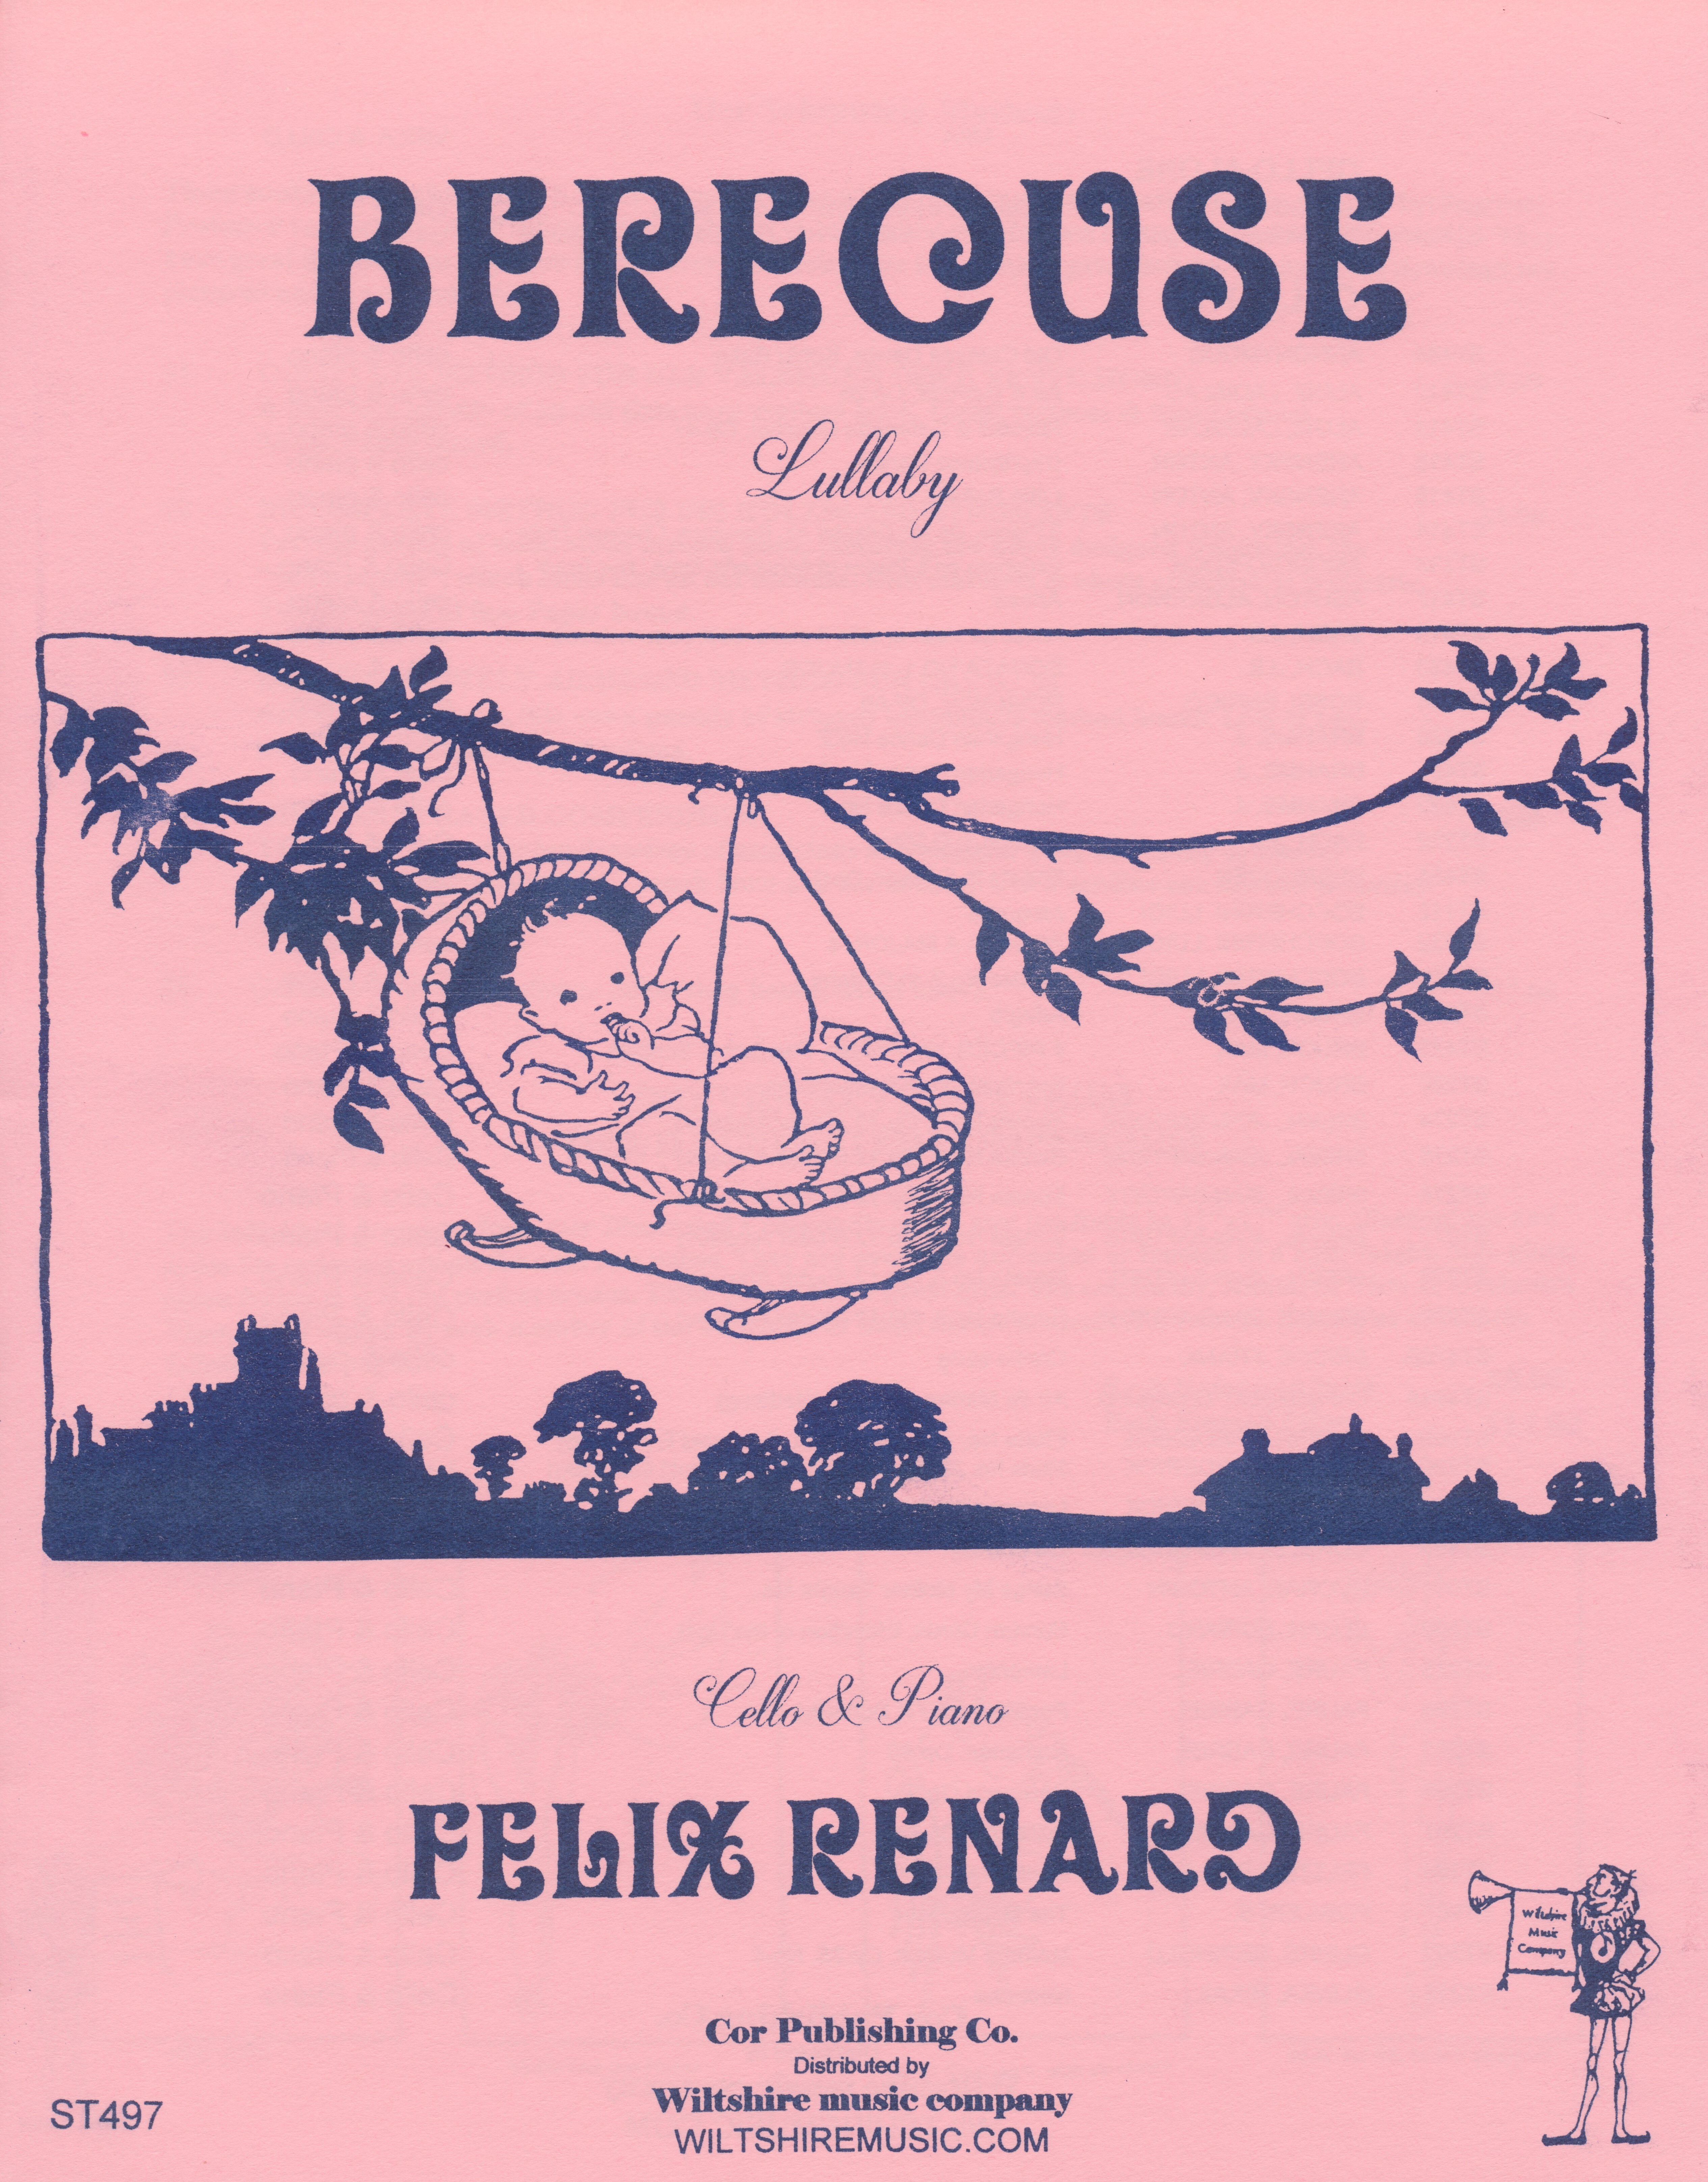 Berecuse (Lullaby), Felix Renard, cello & piano